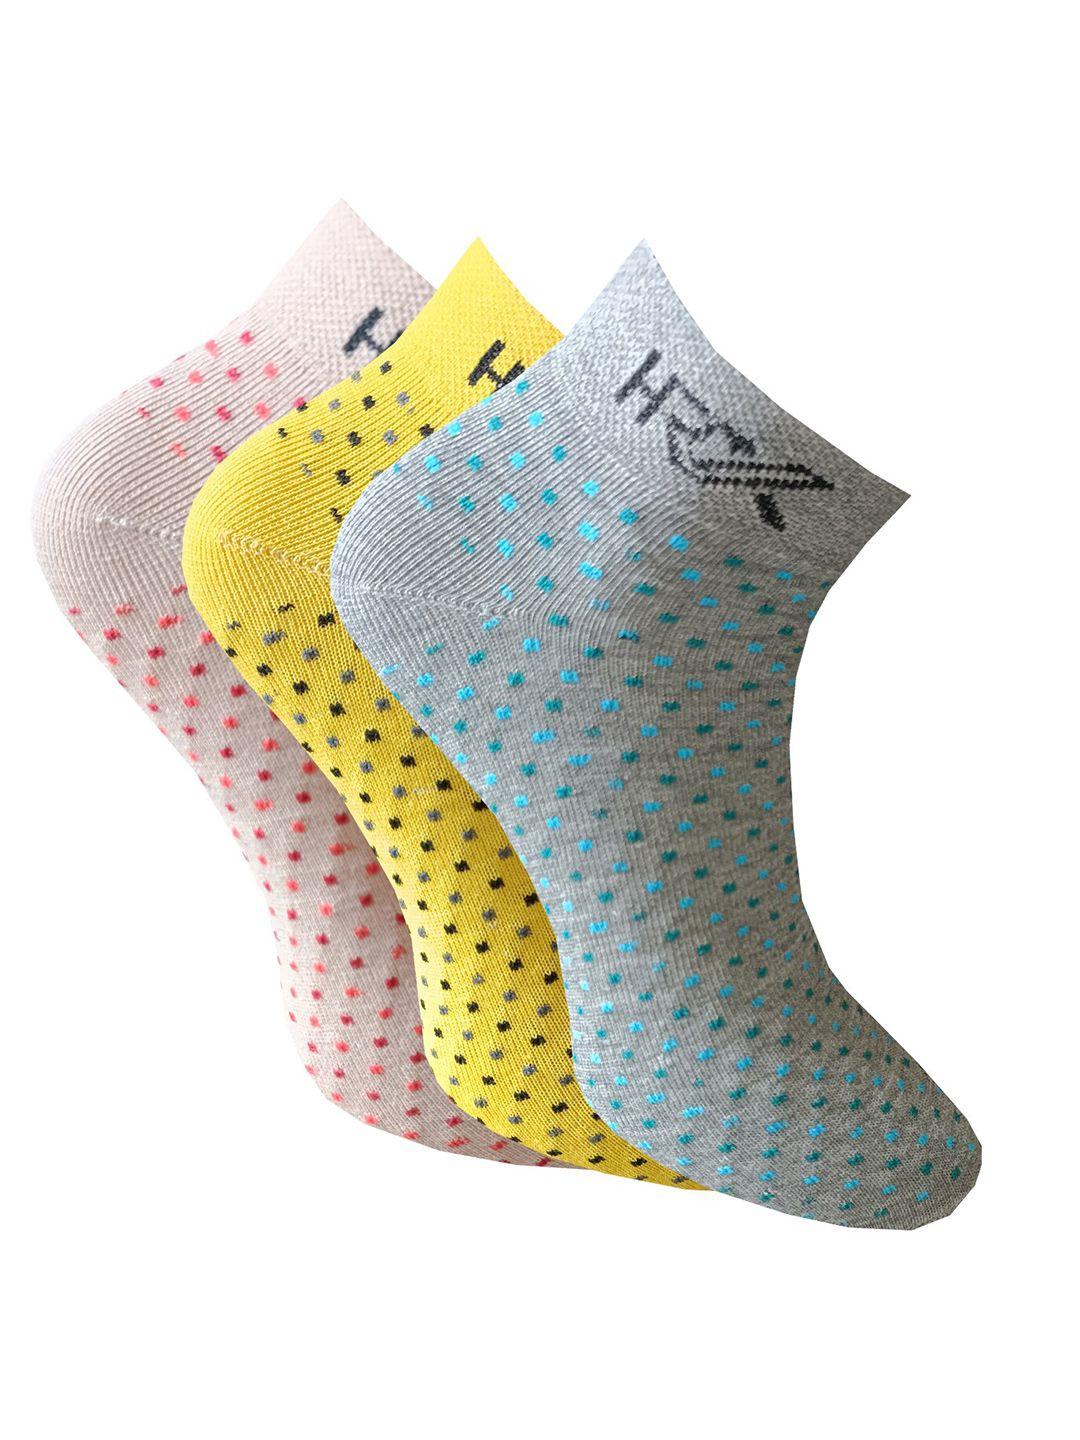 hrx by hrithik roshan men pack of 3 patterned anti-bacterial ankle-length socks